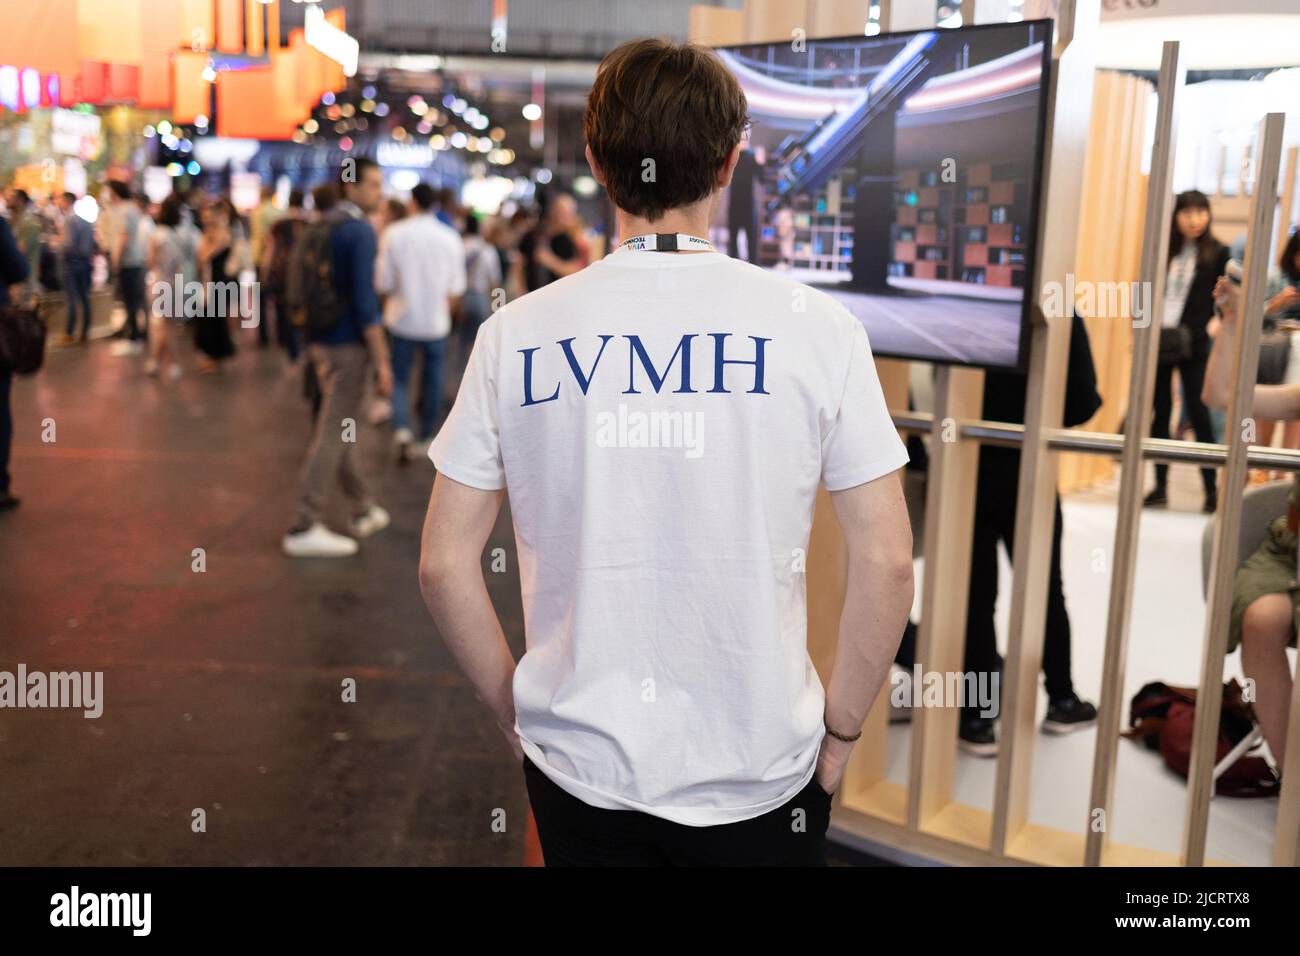 groupe lvmh logo